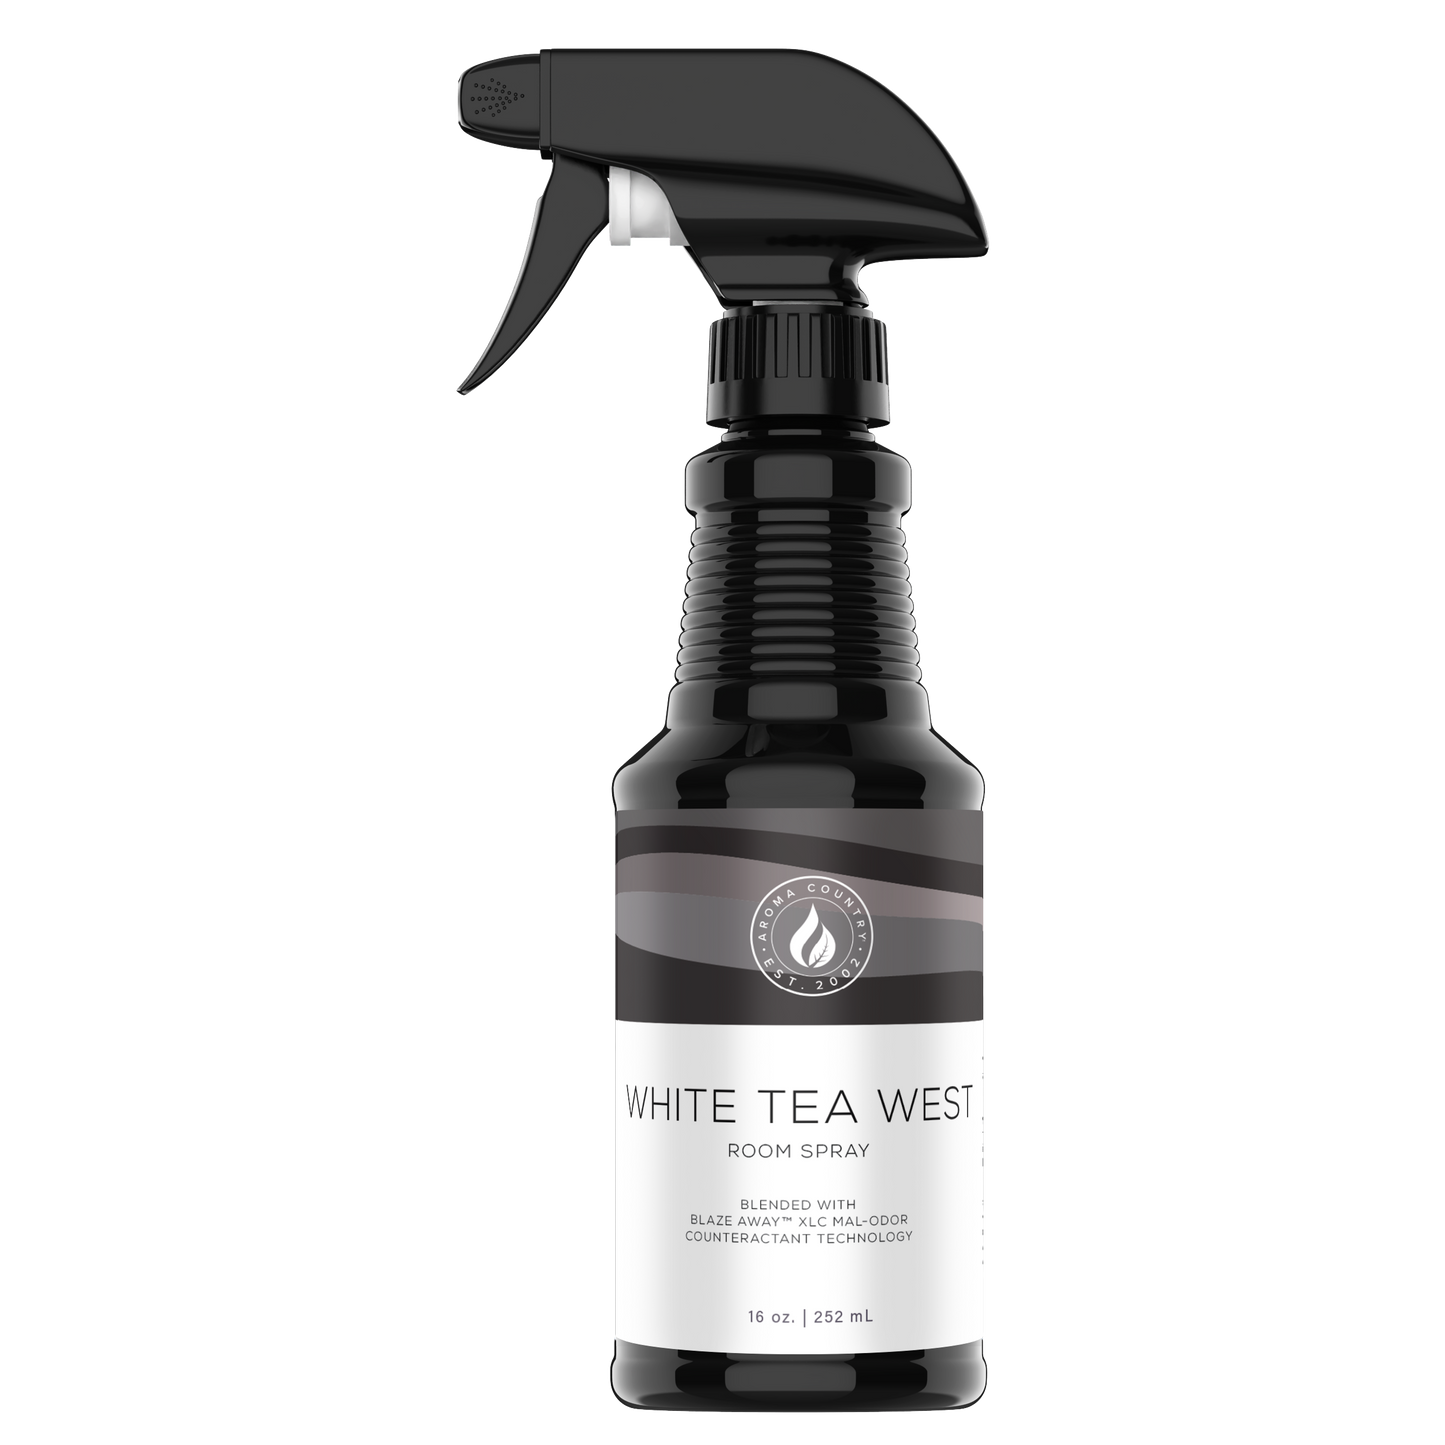 16 ounce bottle of White Tea West Room Spray.